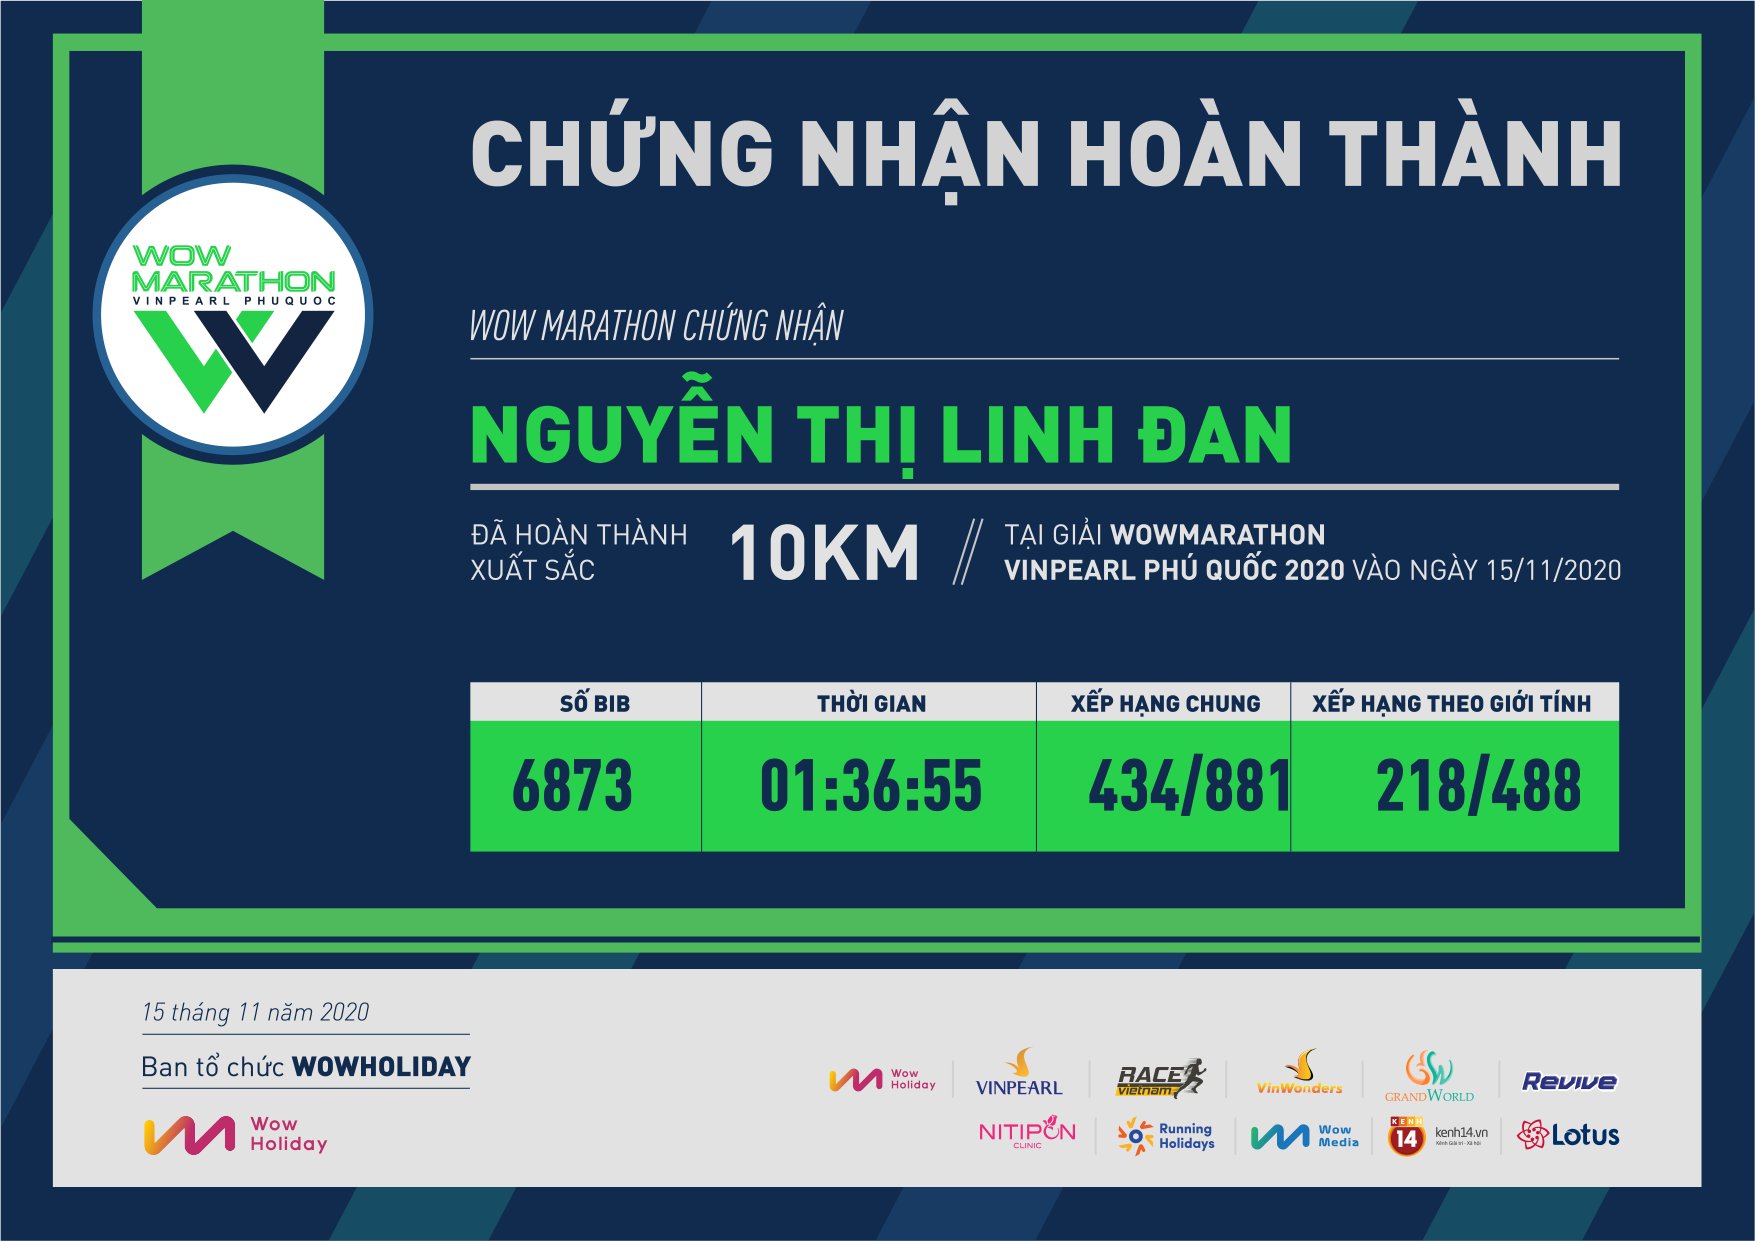 6873 - Nguyễn Thị Linh Đan